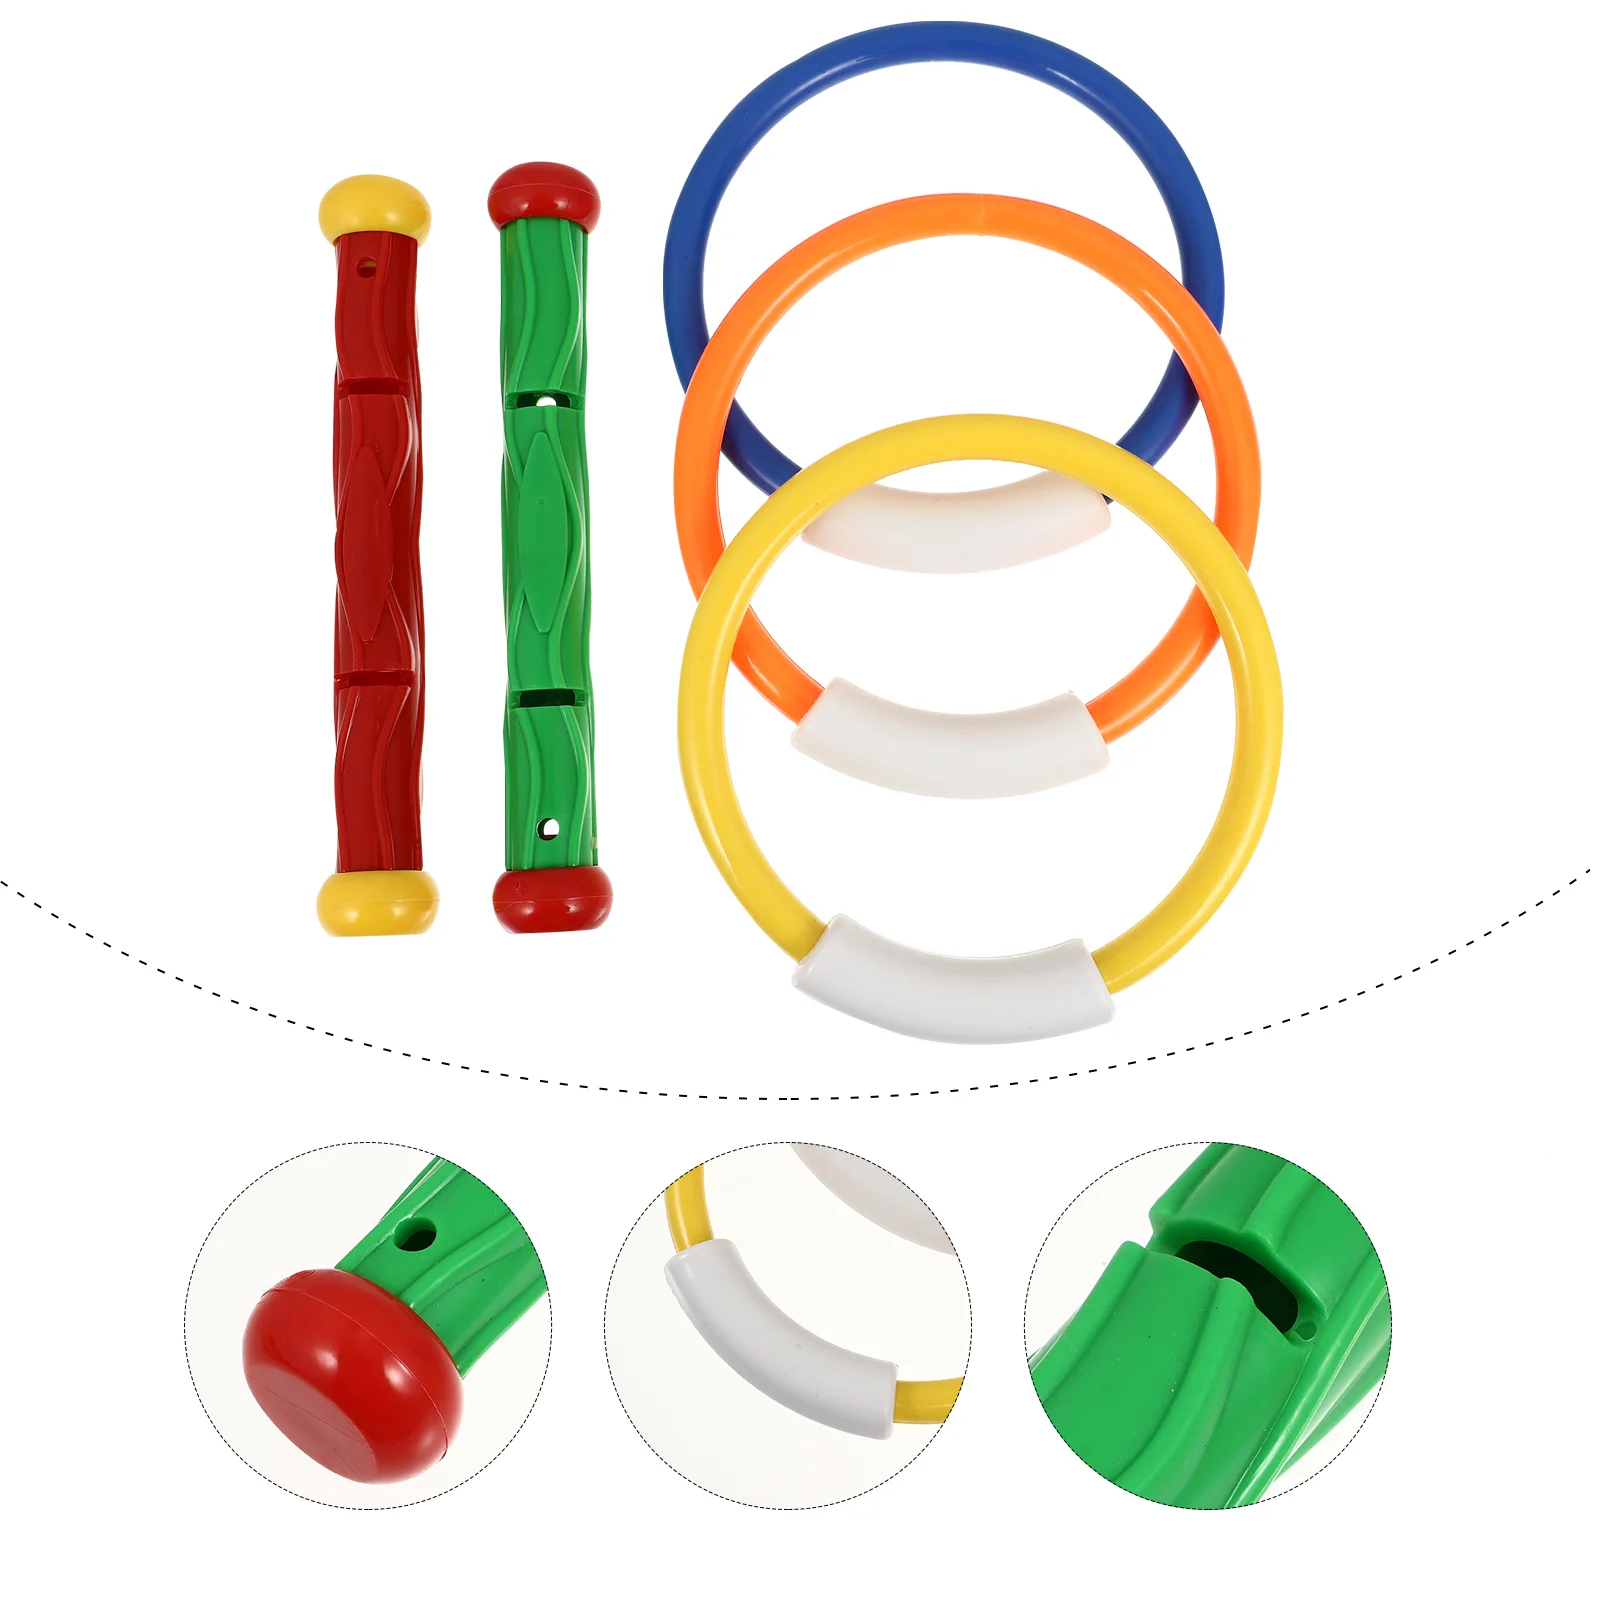 5 Stück bunte Tauch stöcke Pool Waschbecken Tauch ring Spielzeug Schwimmbad Spielzeug für Kinder Tauchen (Zufallszahl und Farbe)